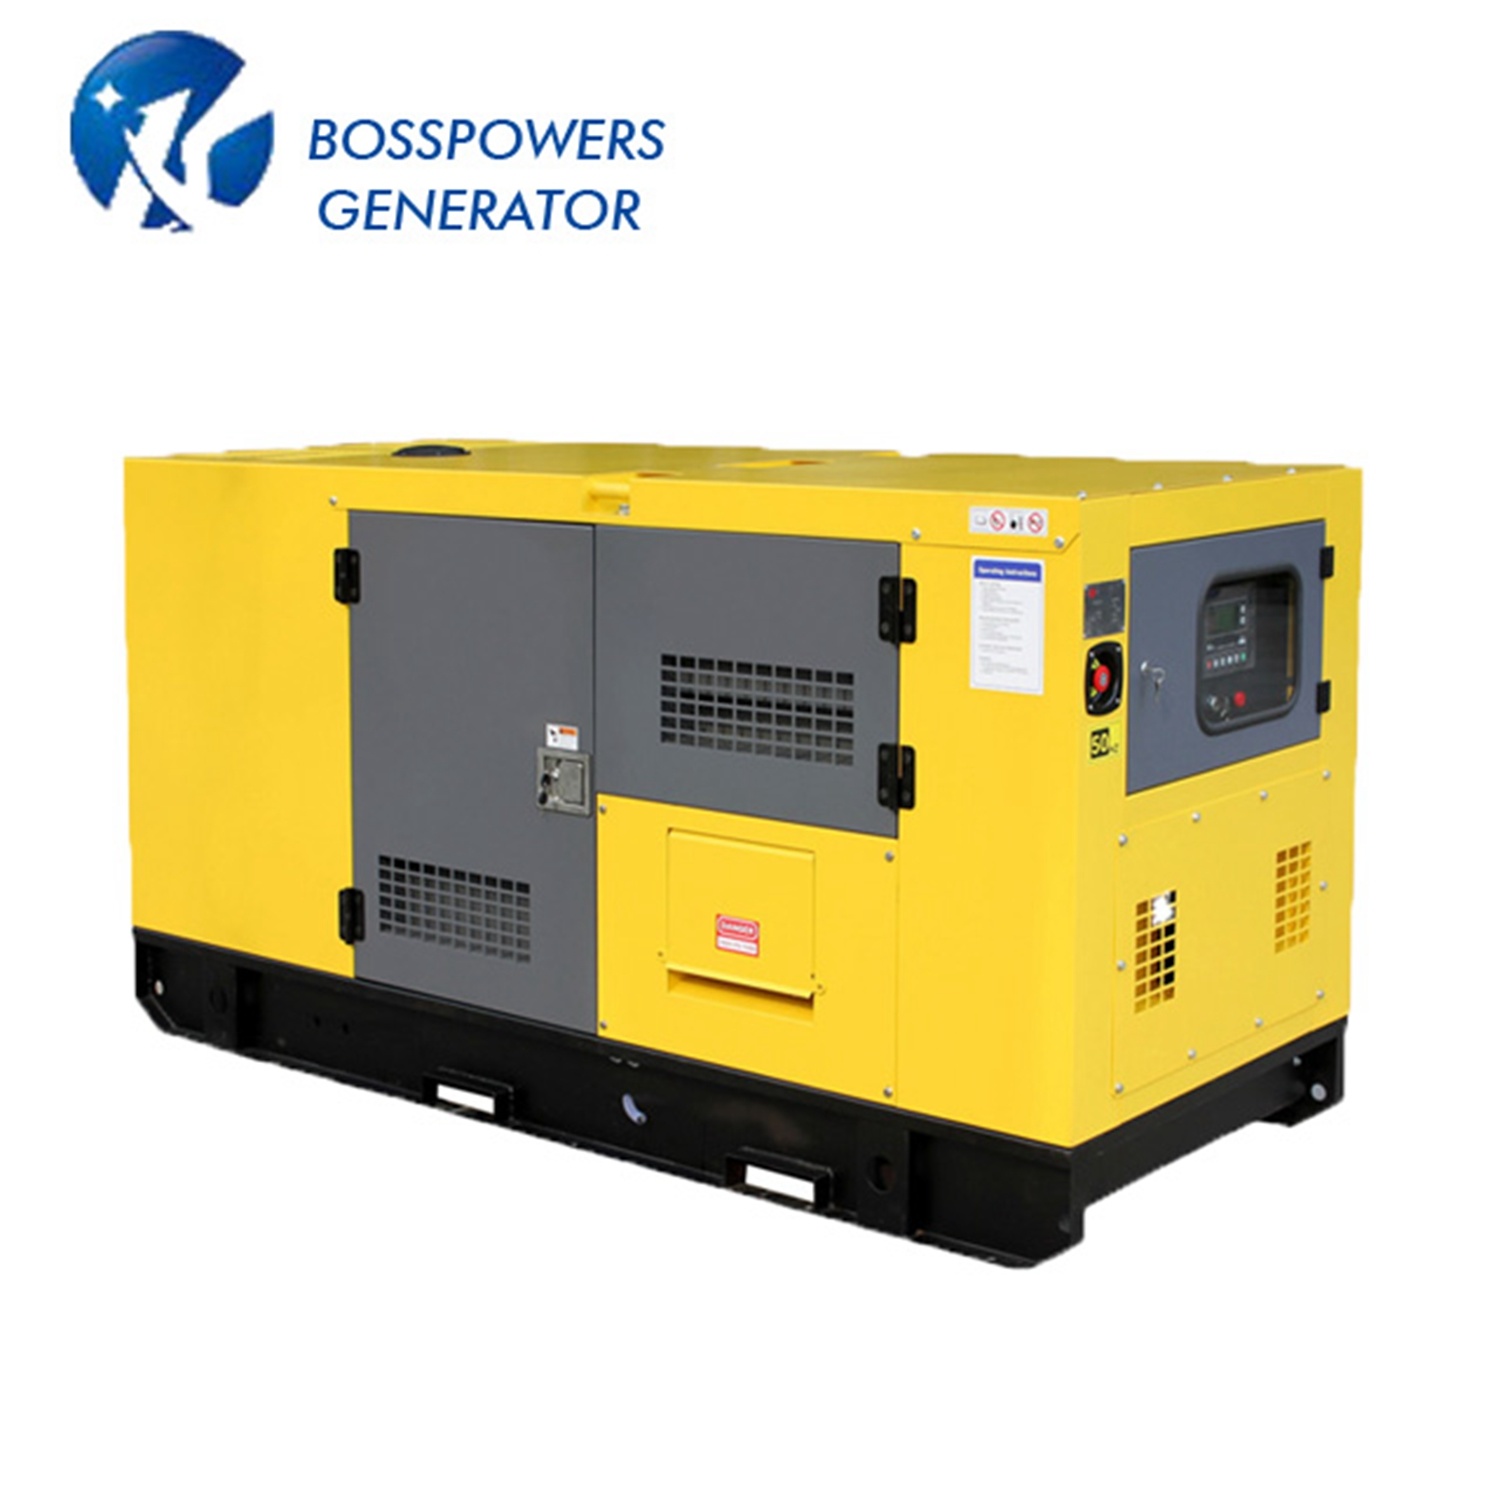 Heavy Duty Rated Power 204kw 60Hz Silent Diesel Industrial Generator with Doosan Dp086la Engine